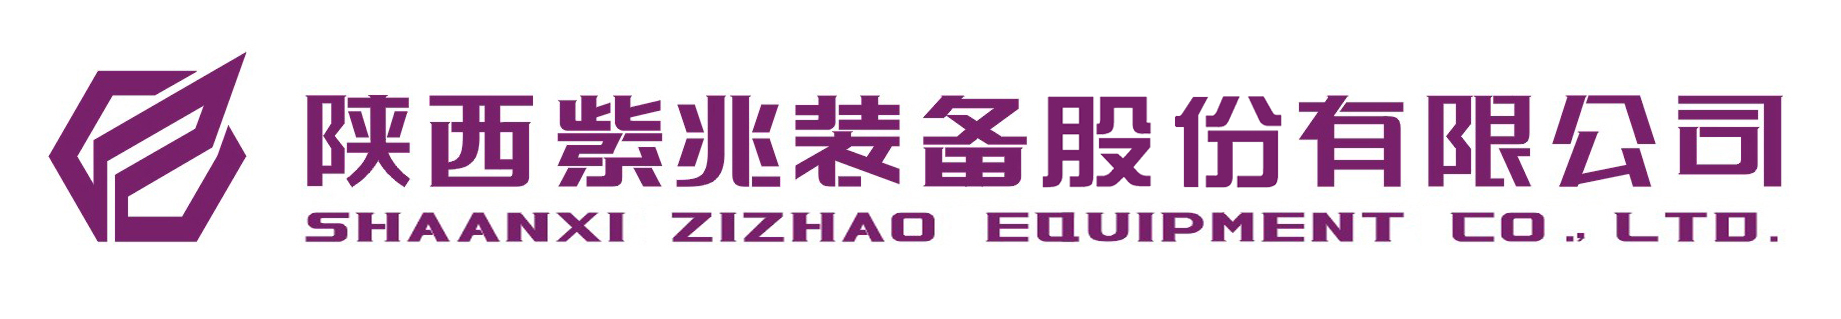 陕西紫兆装备制造有限公司